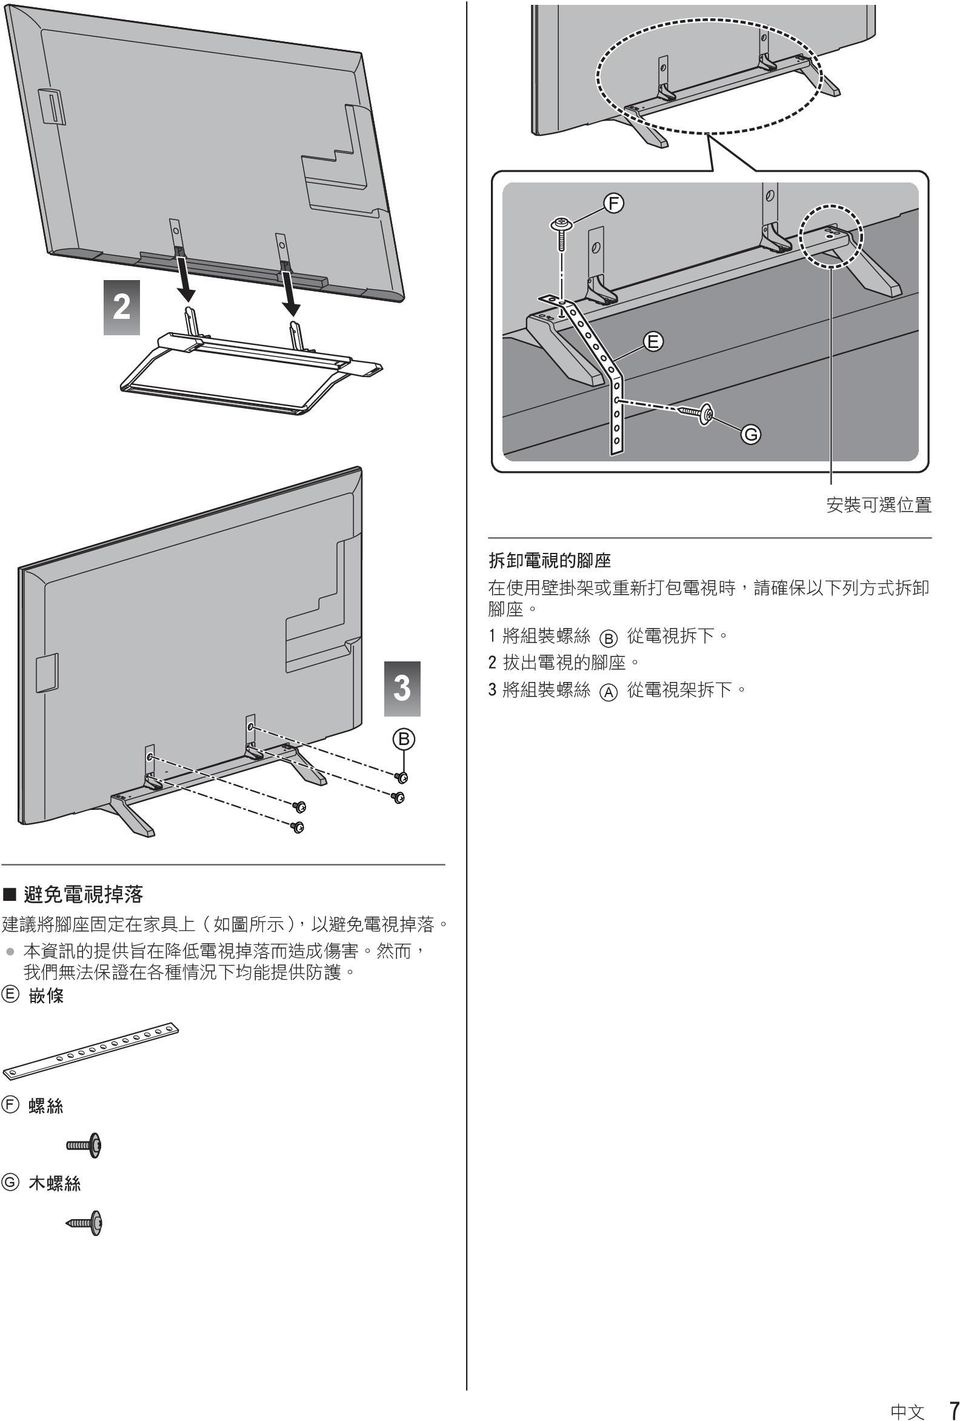 電 視 掉 落 建 議 將 腳 座 固 定 在 家 具 上 ( 如 圖 所 示 ), 以 避 免 電 視 掉 落 本 資 訊 的 提 供 旨 在 降 低 電 視